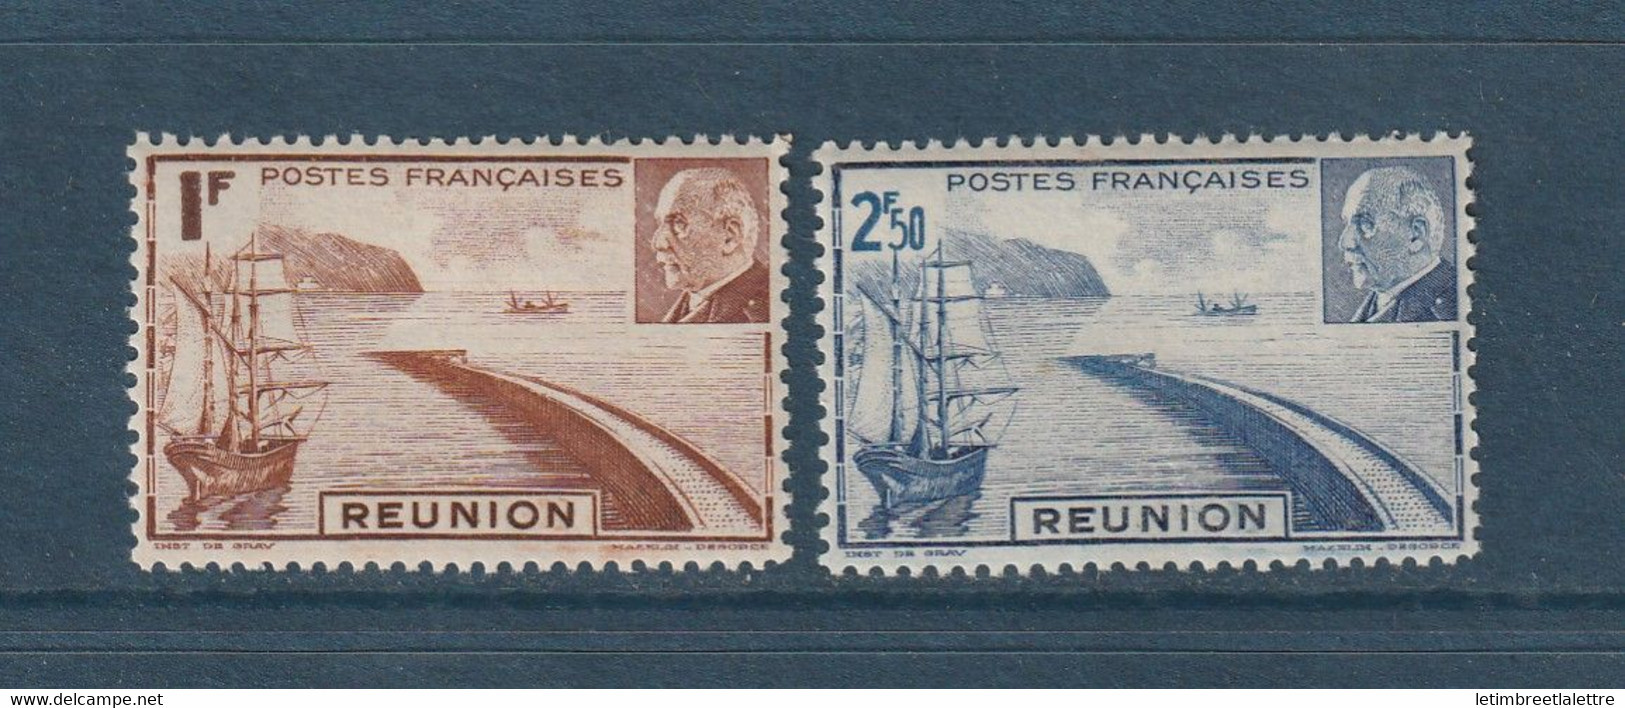 Réunion - YT N° 178 à 179 ** - Neuf Sans Charnière - 1941 - Ungebraucht